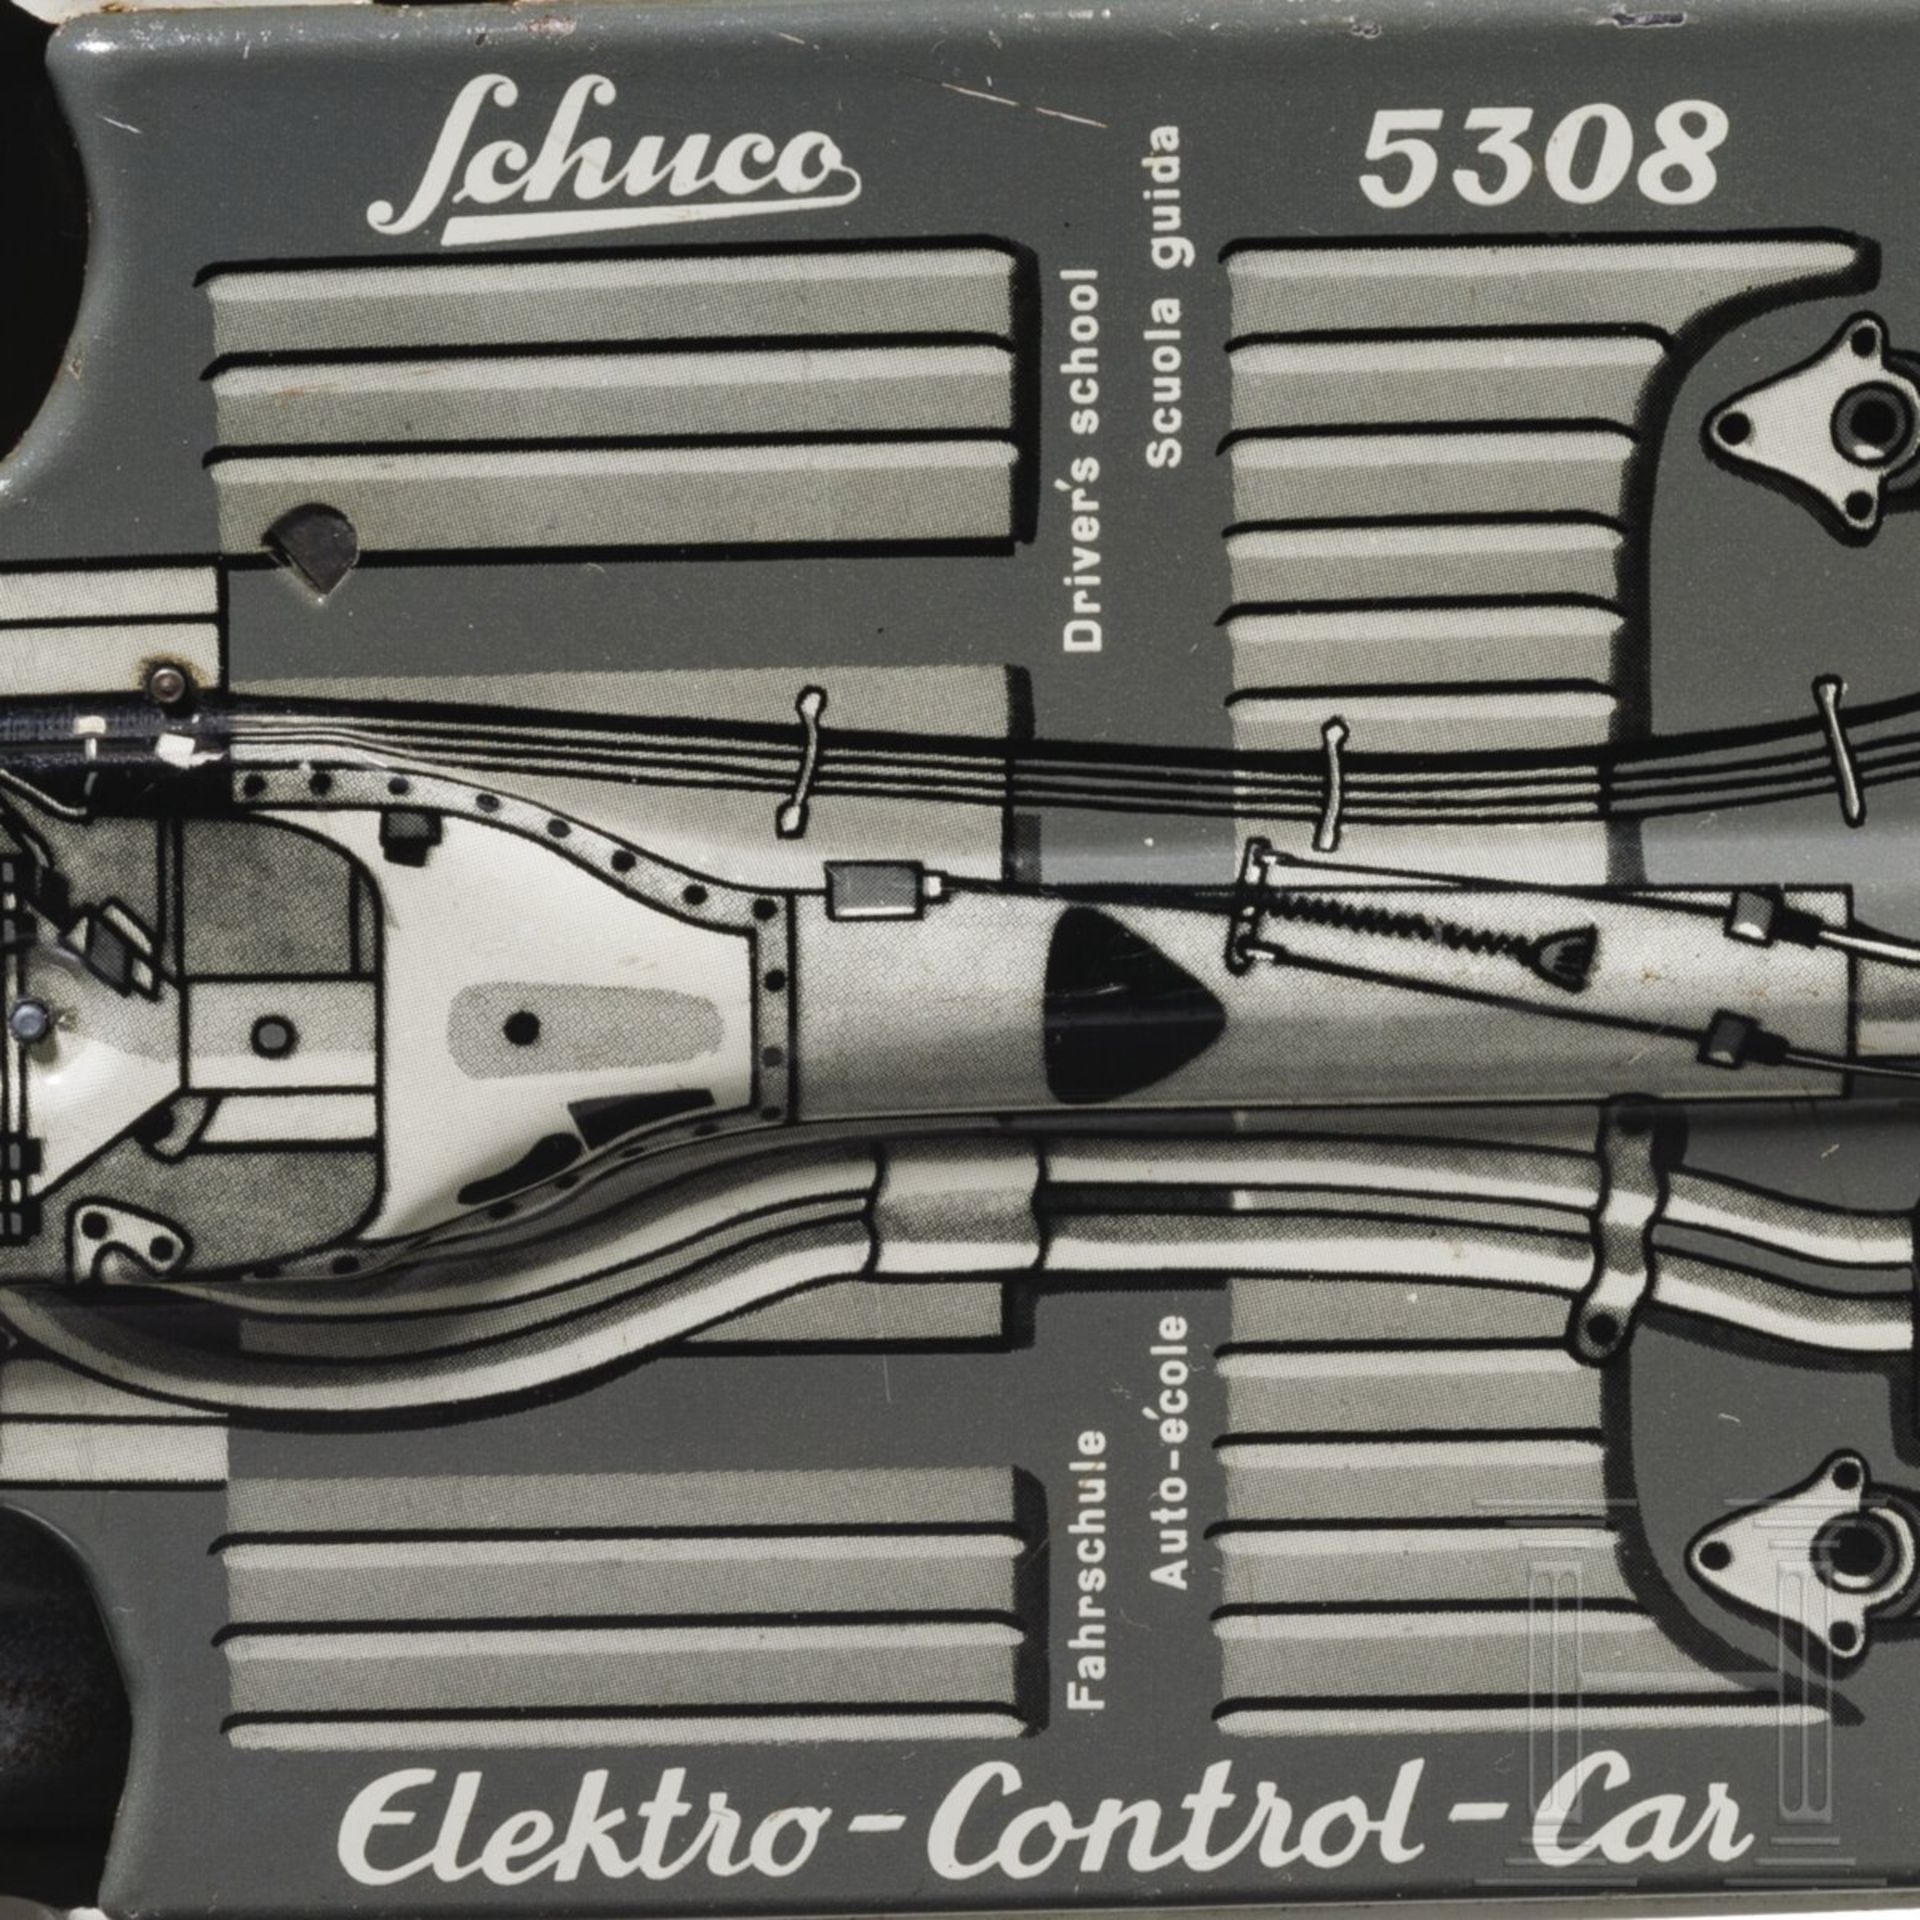 Schuco Elektro-Control-Car 5308 - Mercedes Cabrio 220S - Image 7 of 7